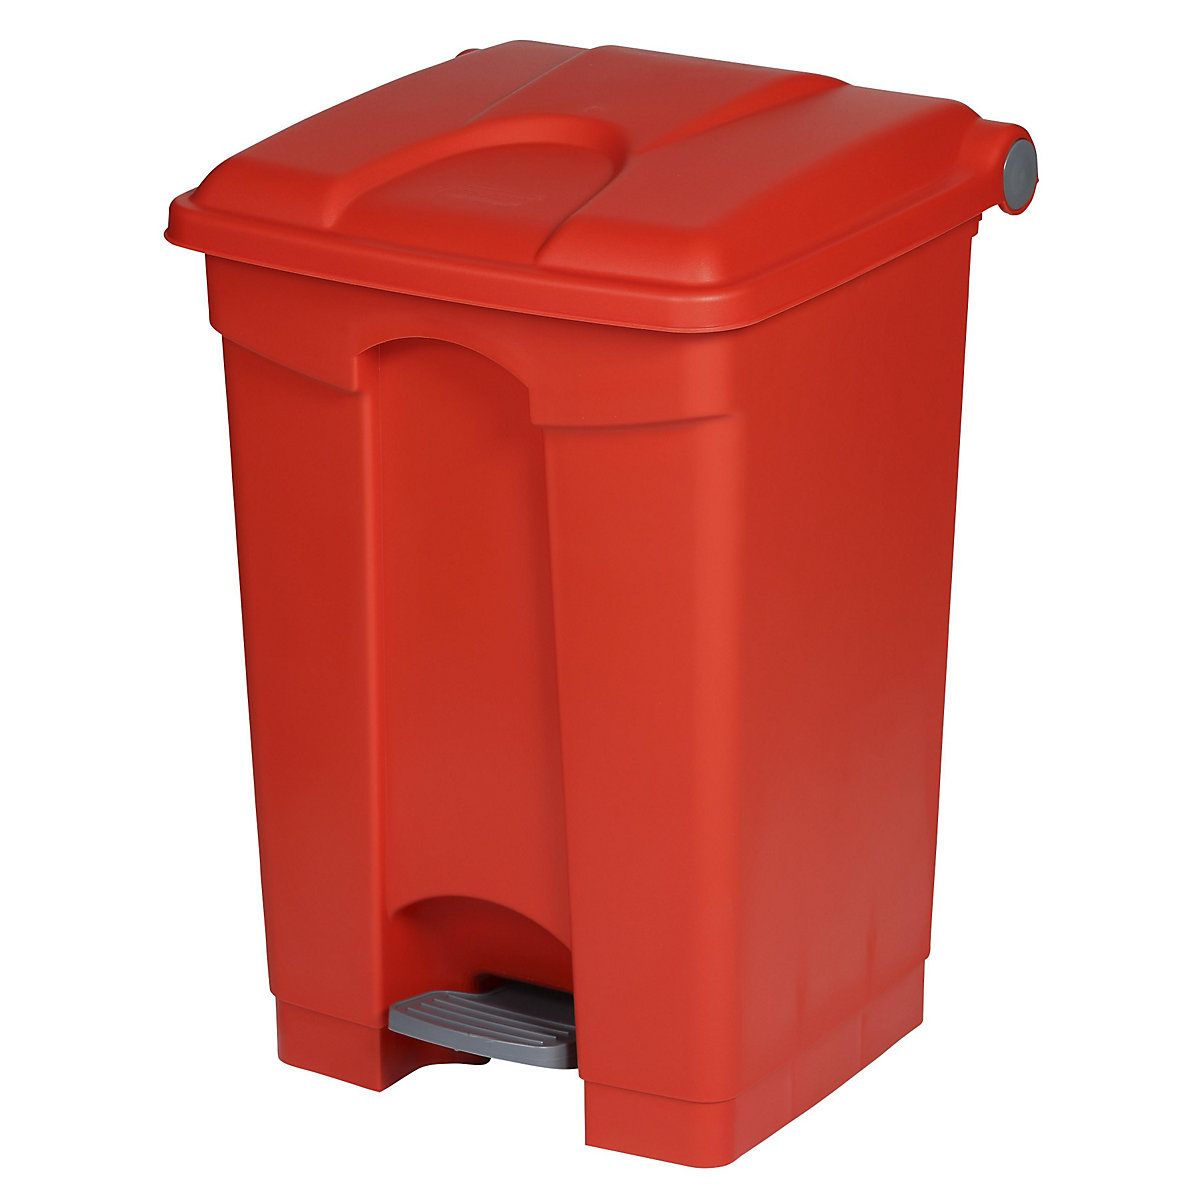 Spremnik za otpad s papučicom, volumen 45 l, ŠxVxD 410 x 600 x 400 mm, u crvenoj boji-17